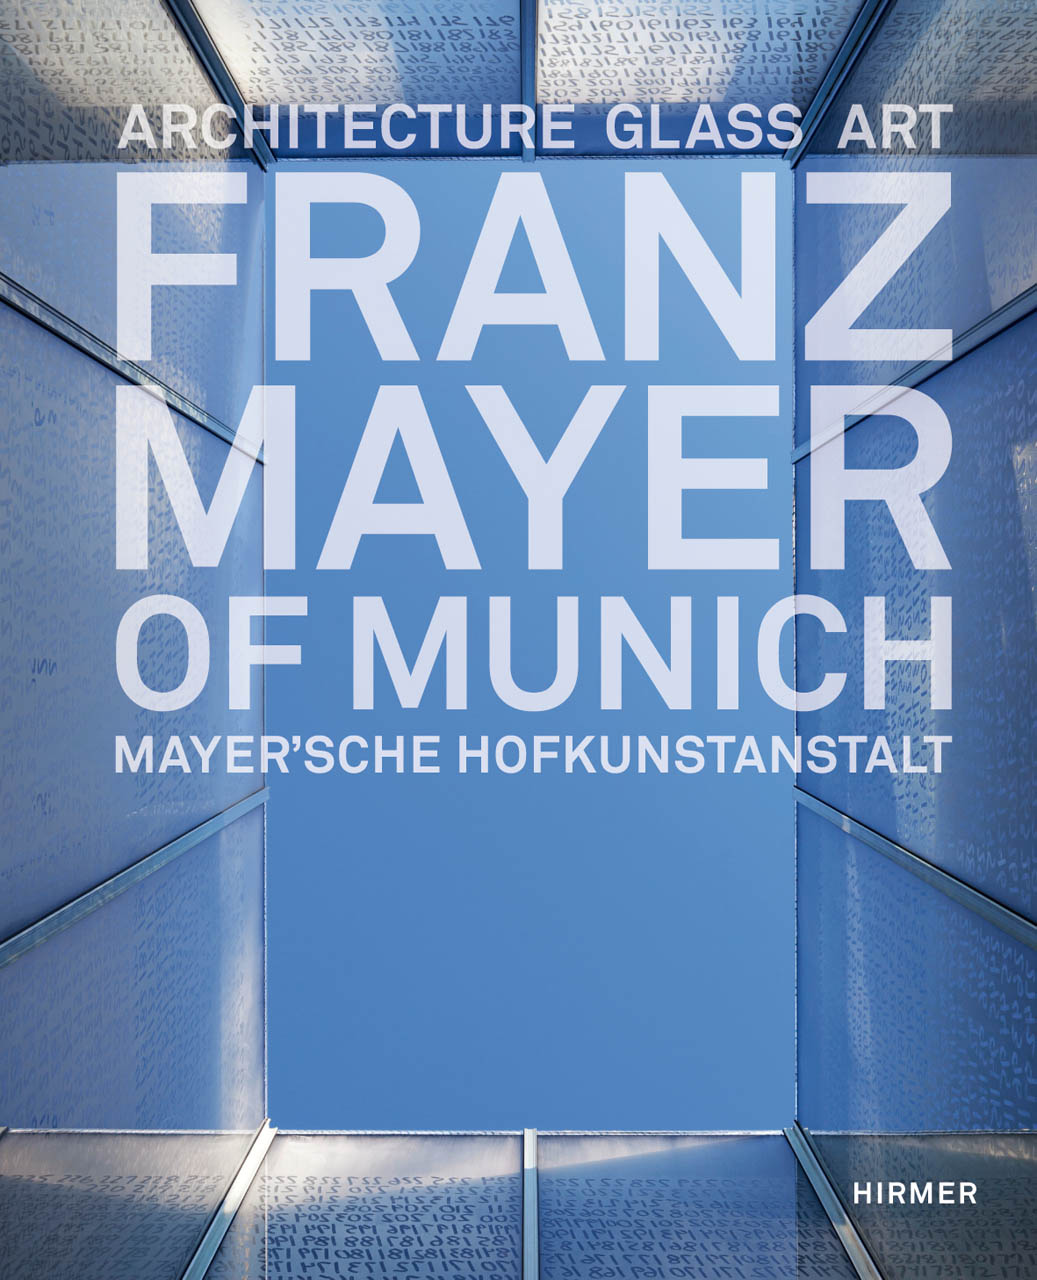 Franz Mayer of Munich: Architecture, Glass, Art Gottfried Knapp and Bernhard Graf